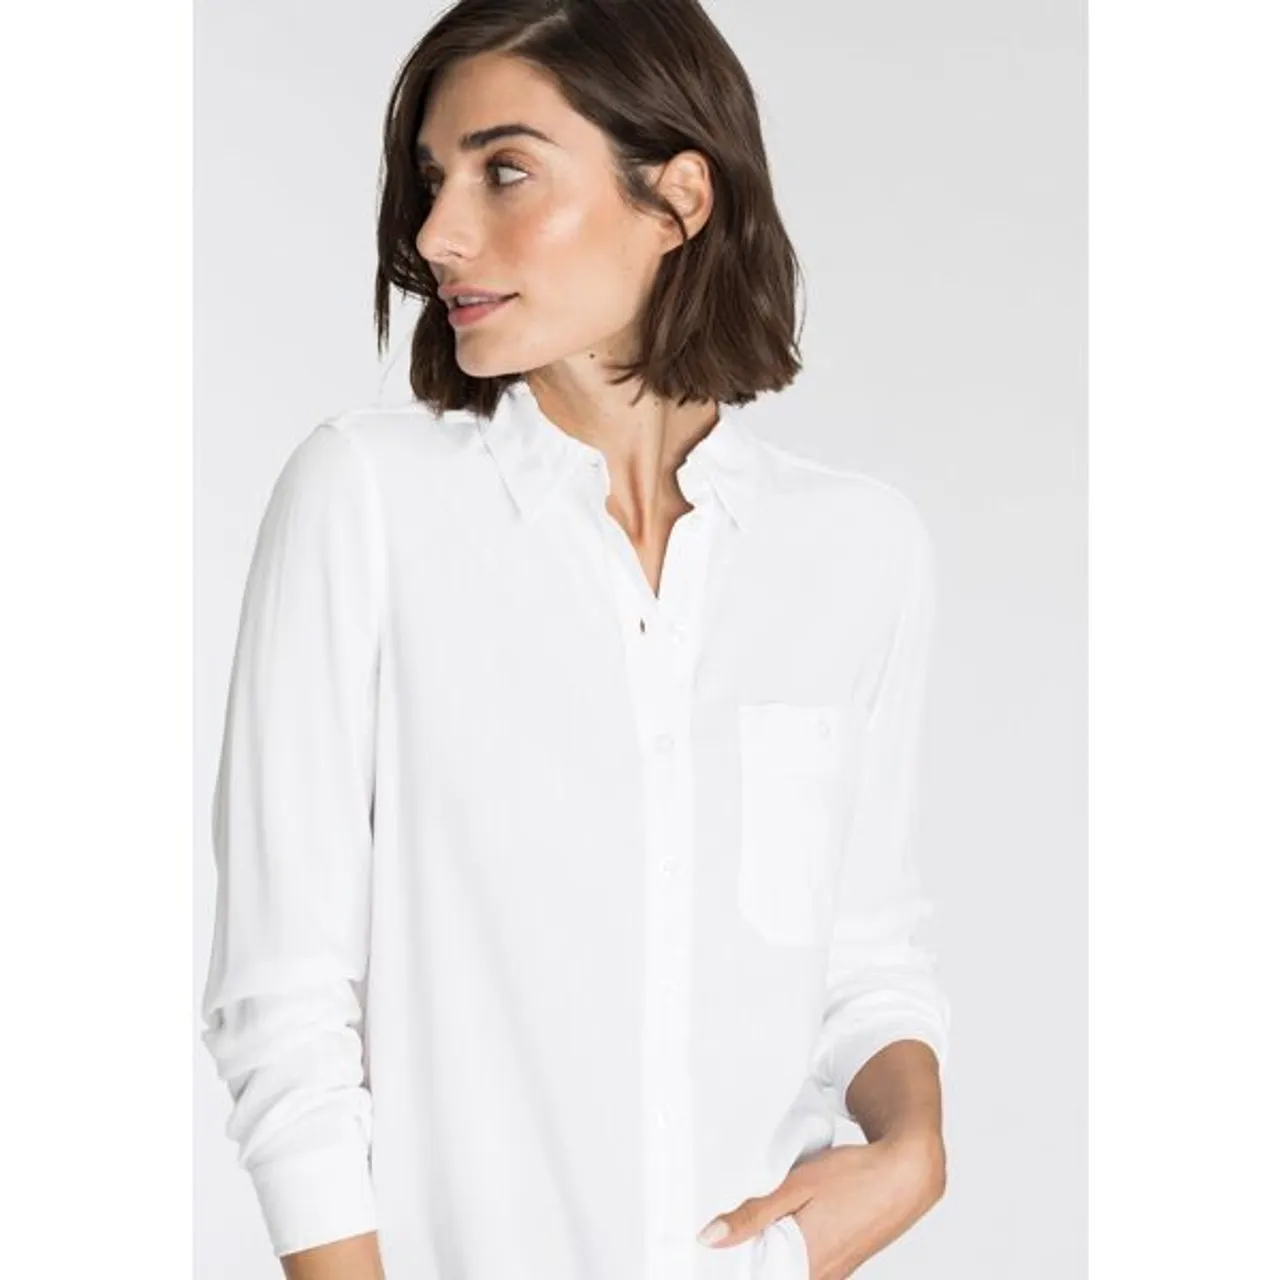 Hemdbluse OTTO PRODUCTS Gr. 34, weiß Damen Blusen langarm aus weicher LENZING™ ECOVERO™ Viskose